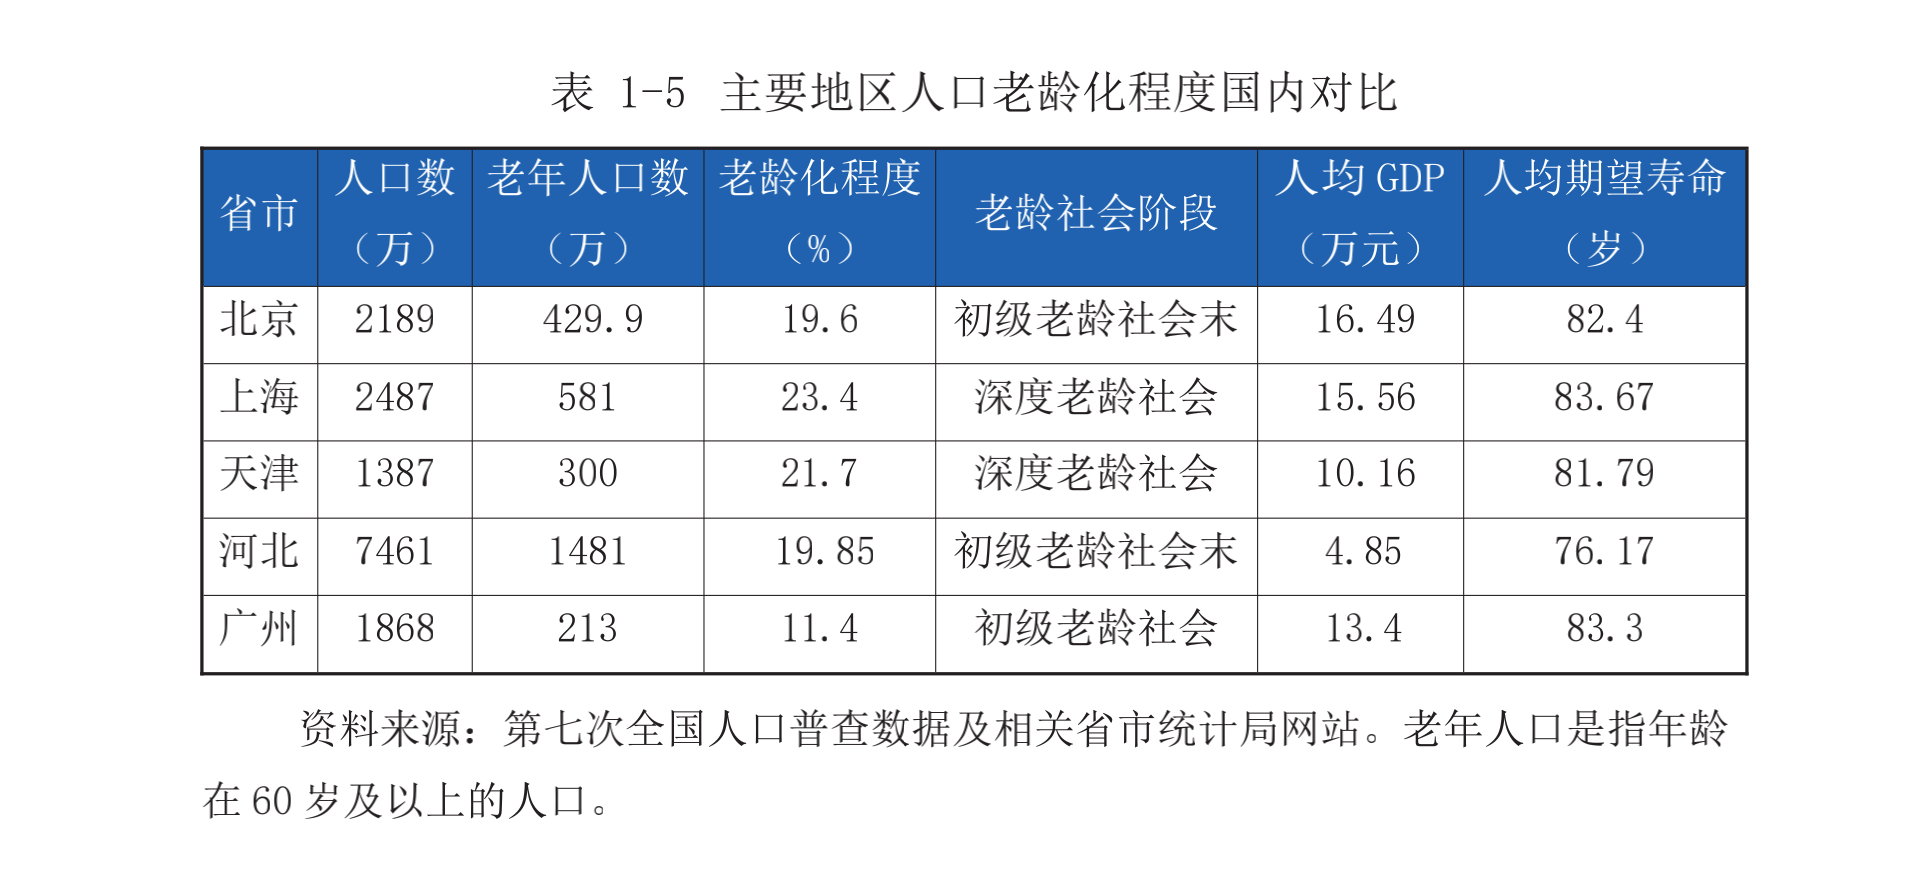 京津冀老龄化超全国均值资本布局津冀承接北京养老需求